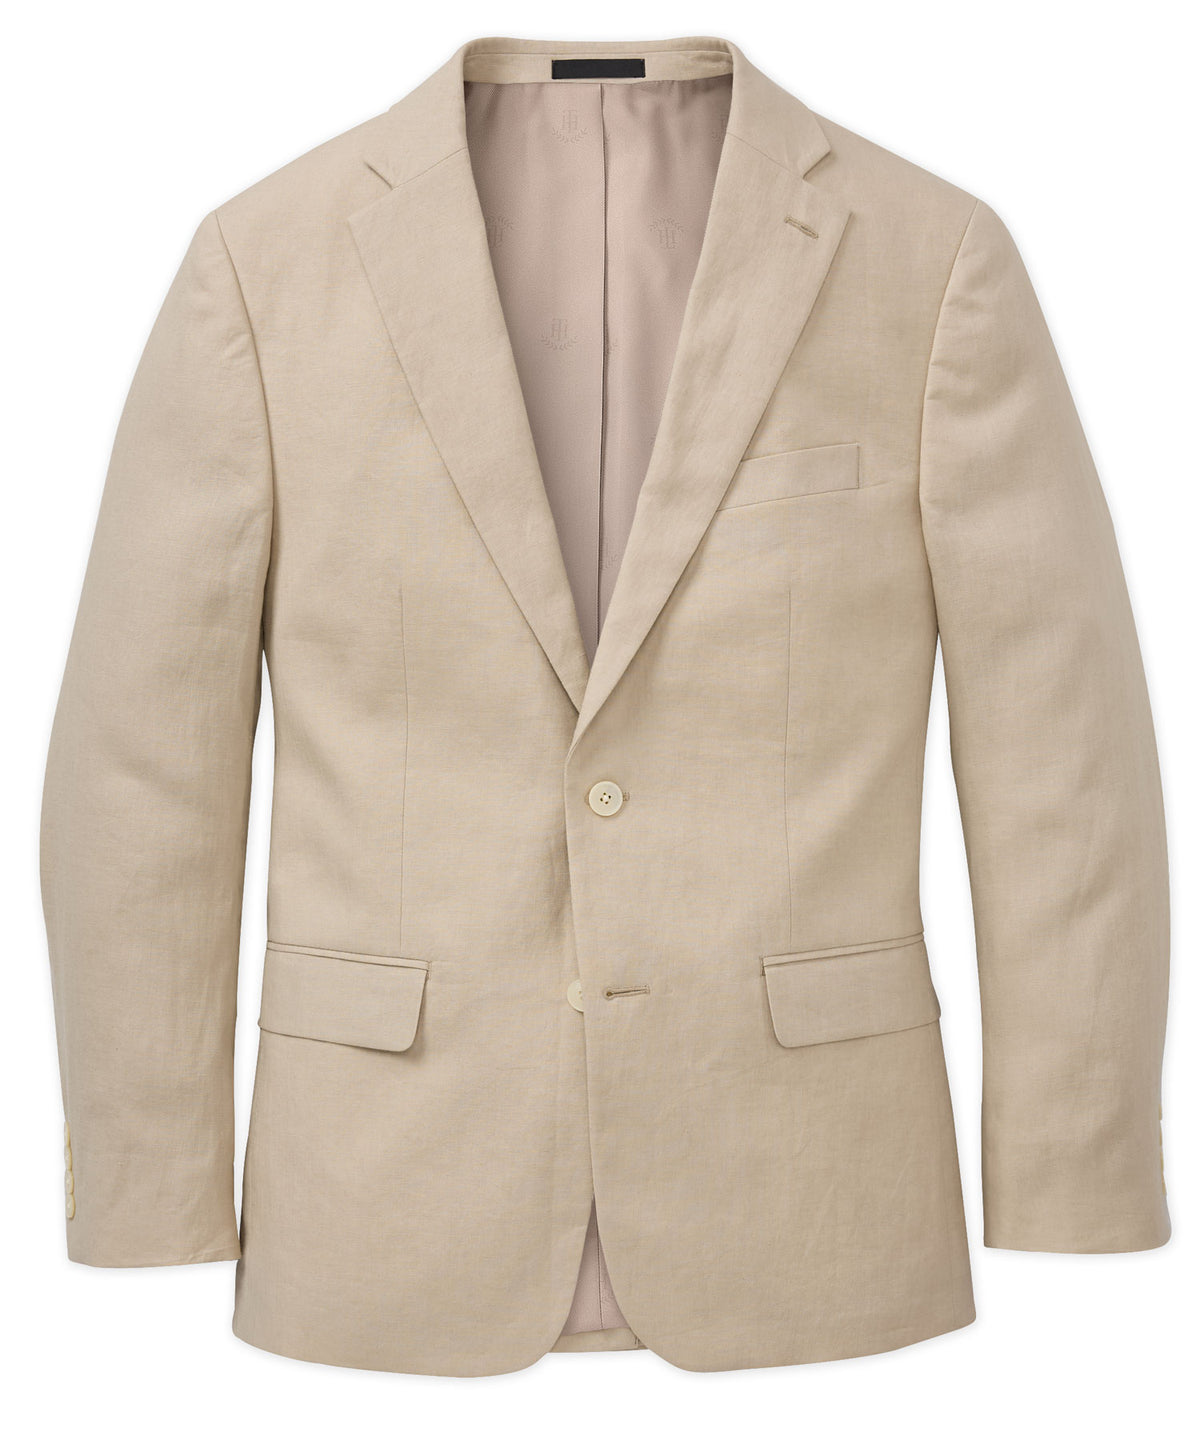 Tommy Hilfiger Solid Linen Sport Coat, Big & Tall